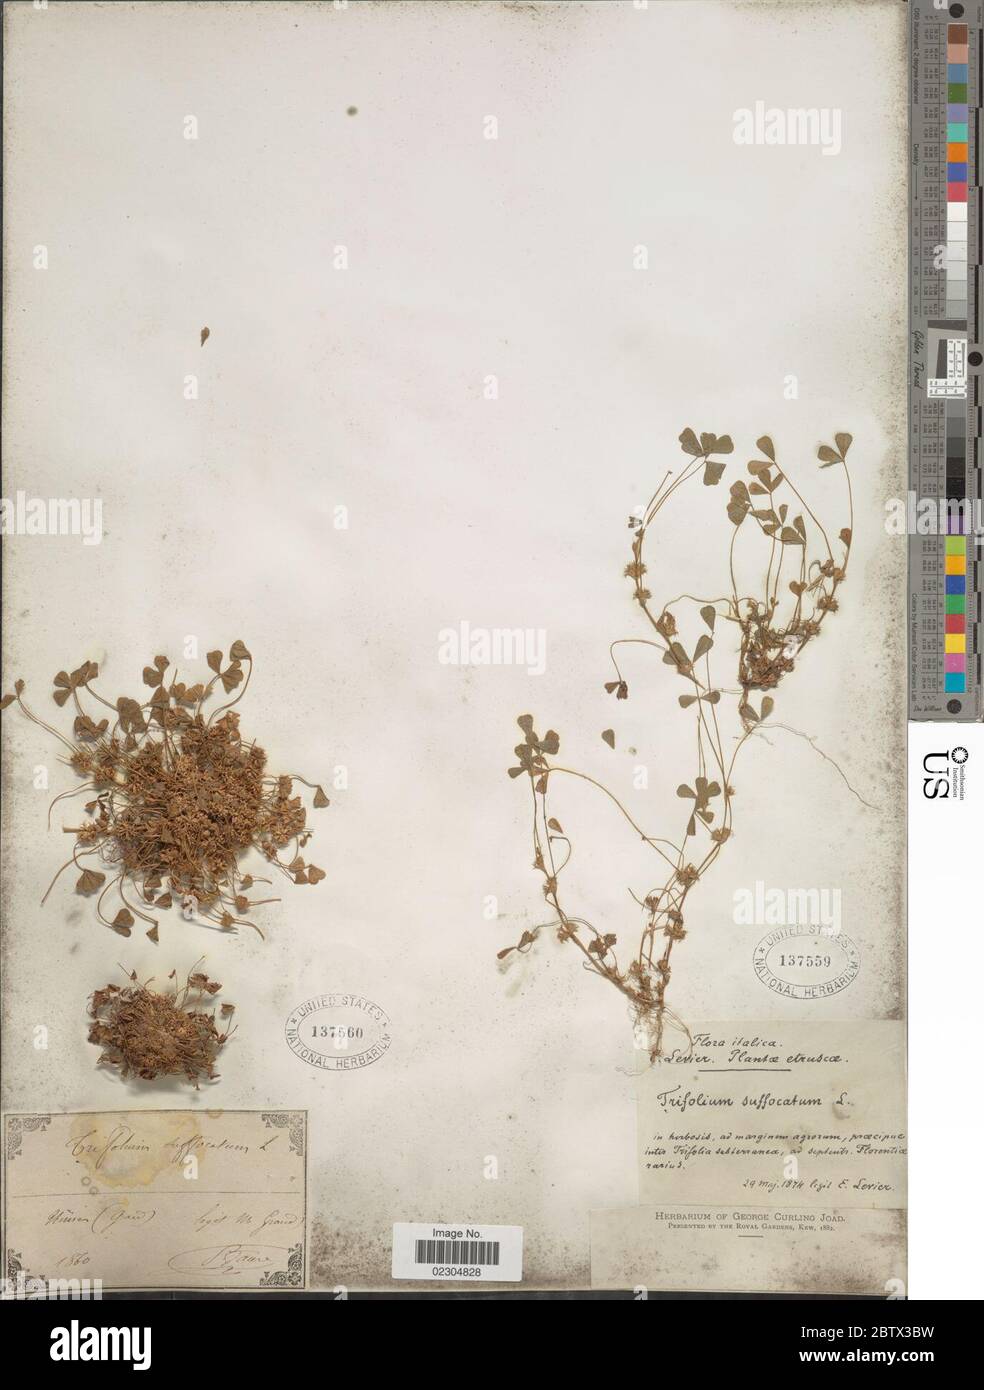 Trifolium suffocatum L. Stock Photo